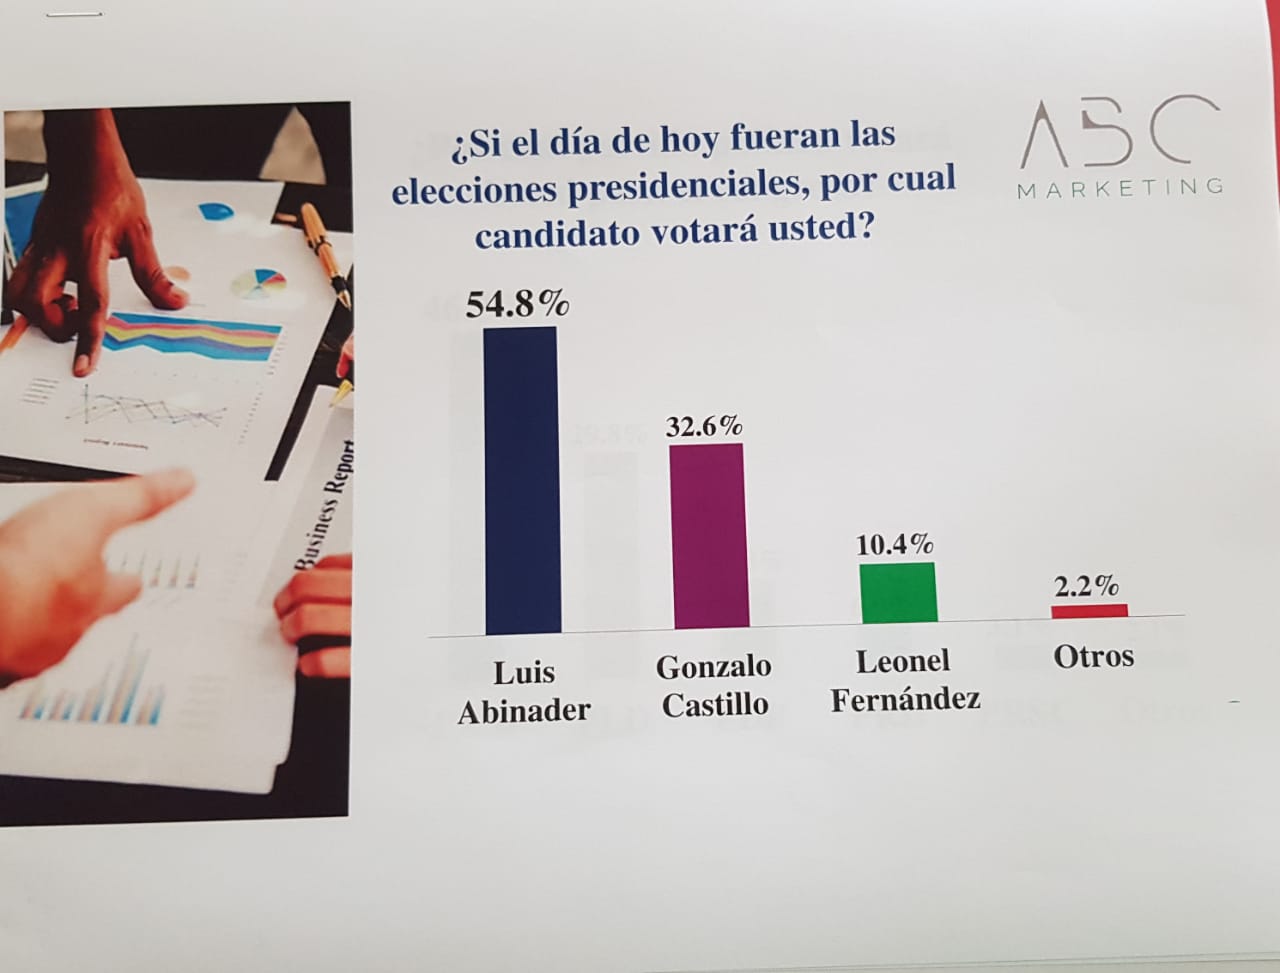 Luis Abinader 54.8 %, Gonzalo Castillo 32.9 % y Leonel Fernández 10.4 %, según encuesta ABC Marketing